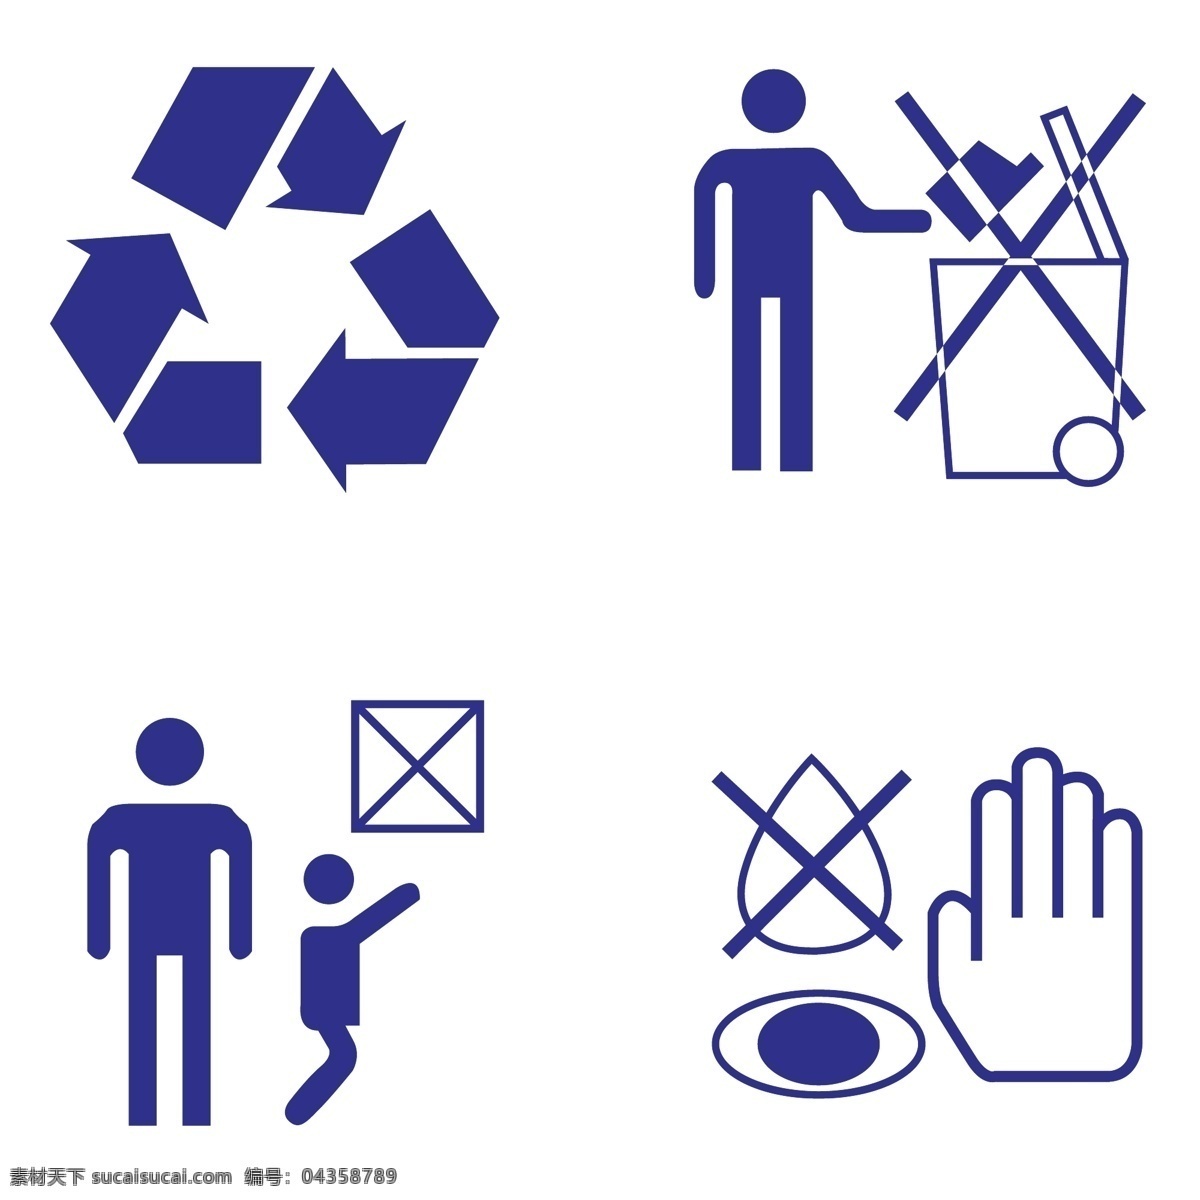 回收图标 回收标志 伸手 放垃圾 常见图标 设计公共标识 共享素材 标志图标 公共标识标志